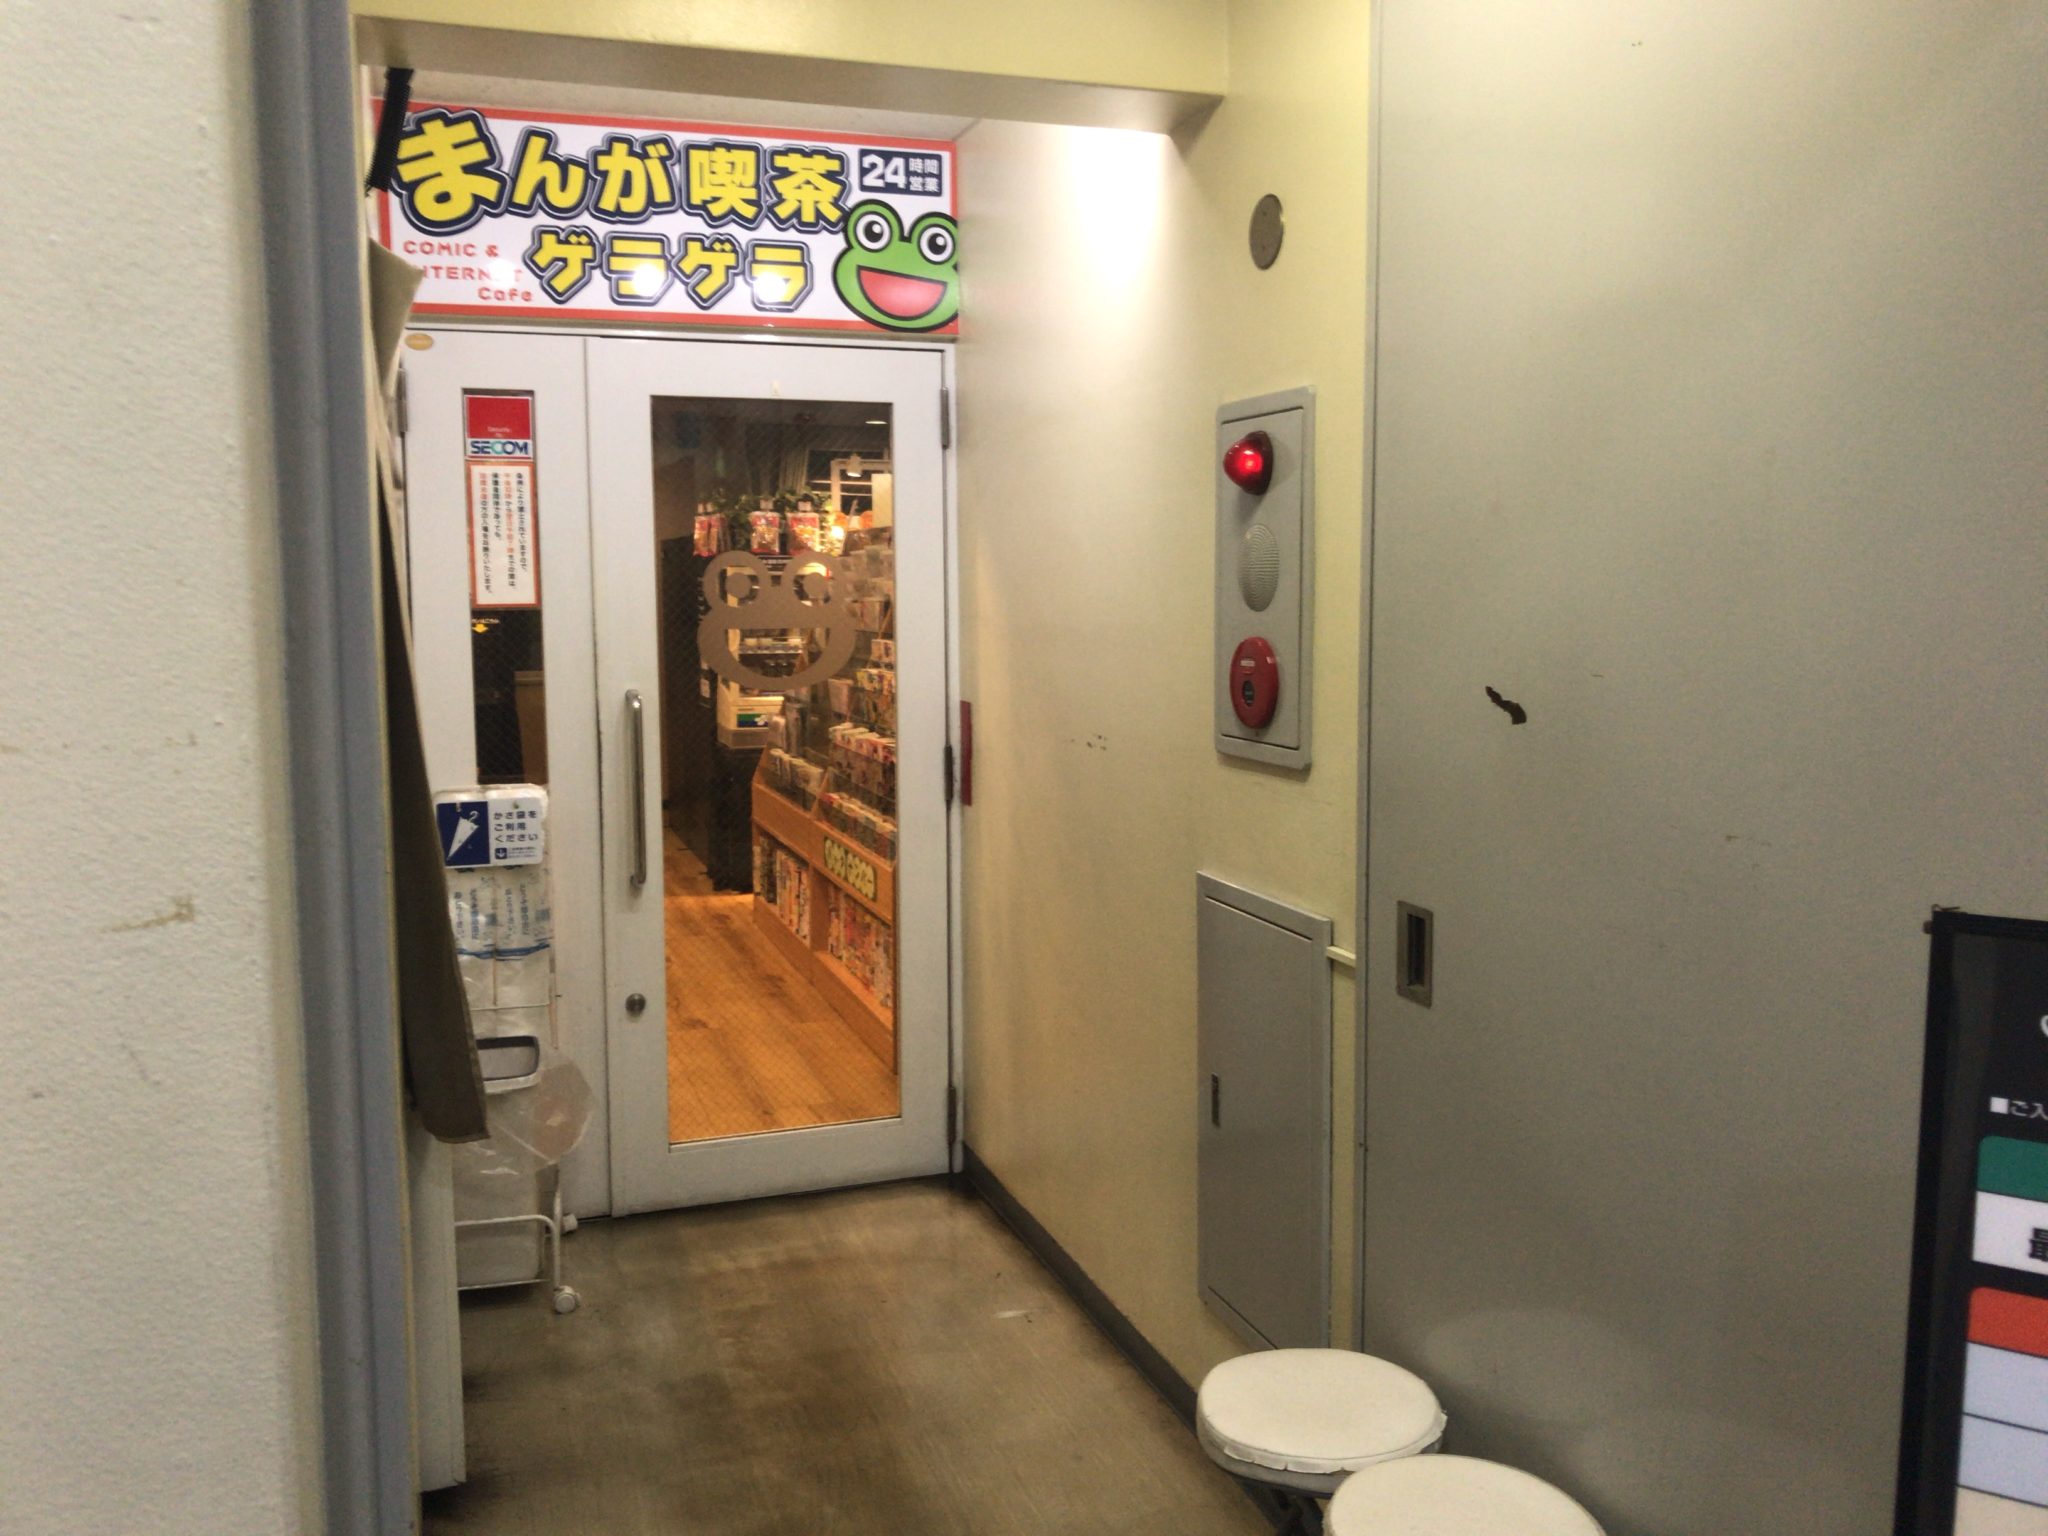 南浦和駅から徒歩1分 まんが喫茶ゲラゲラ 南浦和店をレポート 日本全国のネカフェ 漫画喫茶マップのヒマップ